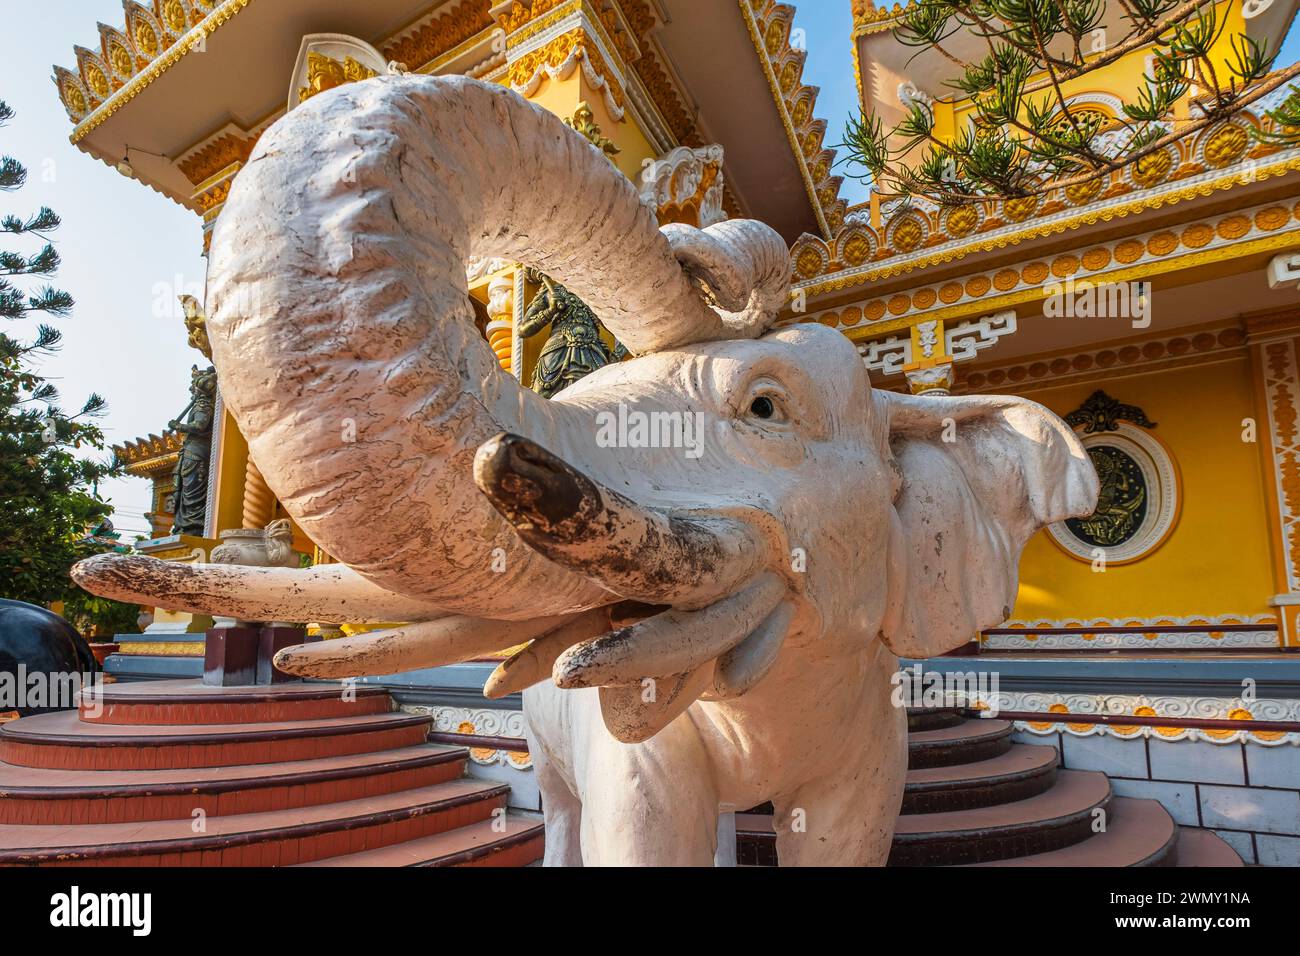 Vietnam, das Mekong Delta, eine Provinz von Giang, Chau Doc, Nui Sam Bezirk am Fuße des Mount Sam, eine bedeutende Wallfahrtsstätte, Tay, ein buddhistischer Tempel Stockfoto